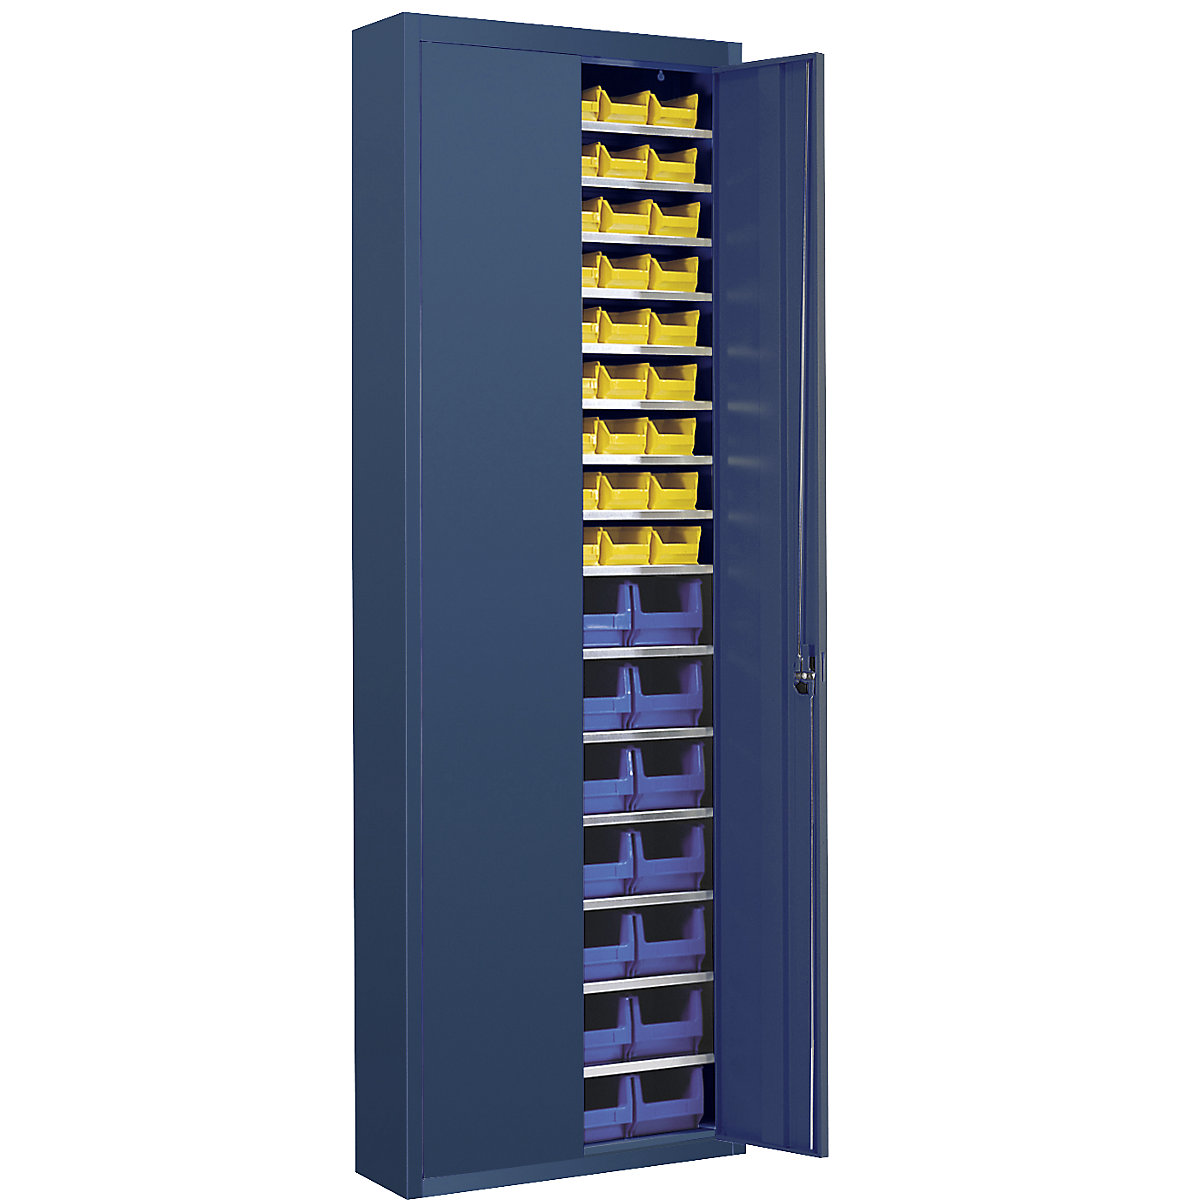 Magazinschrank mit Sichtlagerkästen mauser, HxBxT 2150 x 680 x 280 mm, einfarbig, blau, 82 Kästen-2